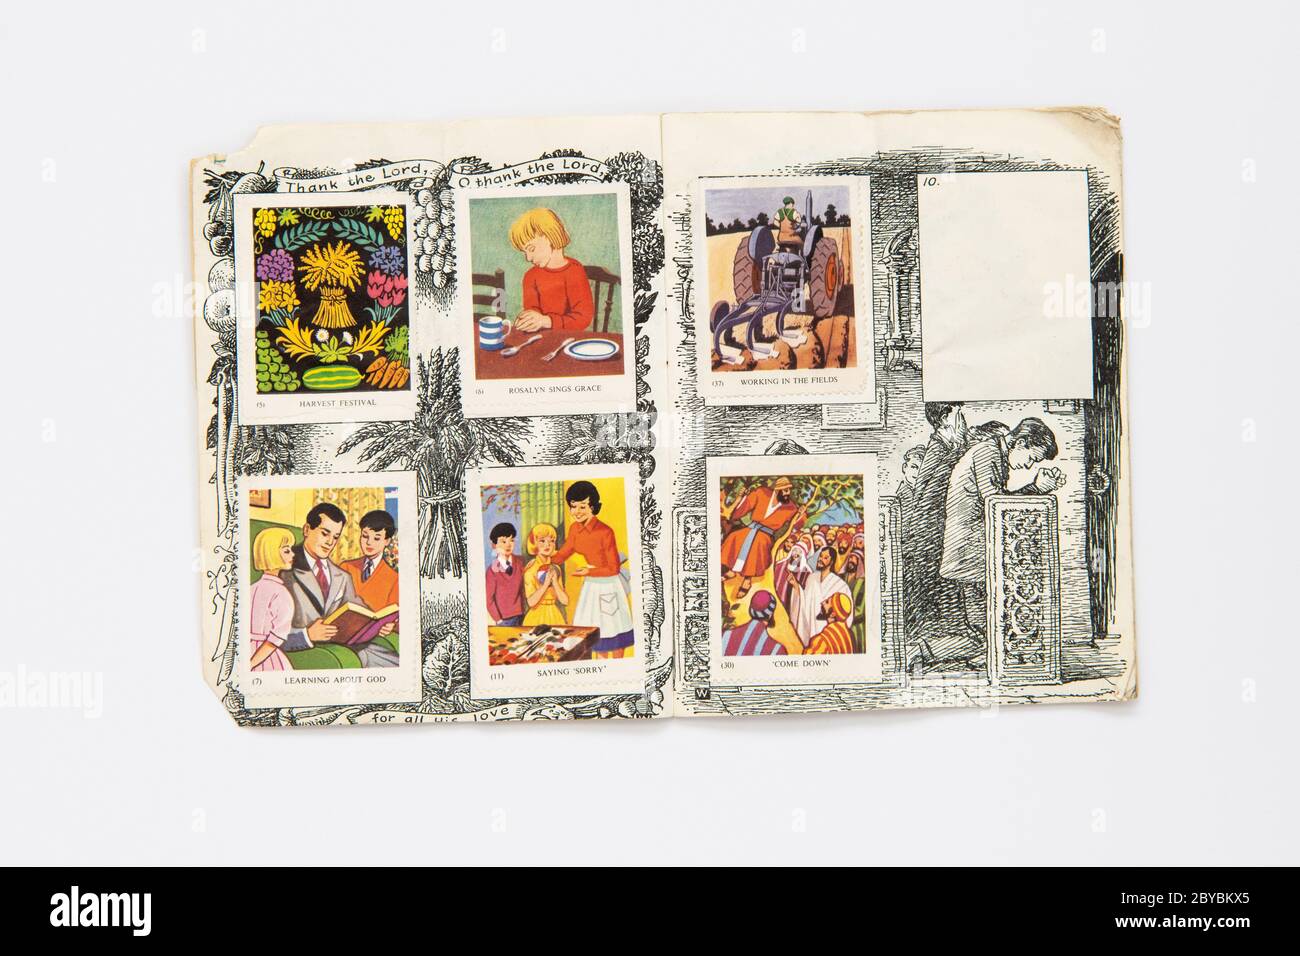 Album de timbres d'école du dimanche avec timbres de présence - Conseil des enfants de l'Assemblée de l'Église - Royaume-Uni Banque D'Images